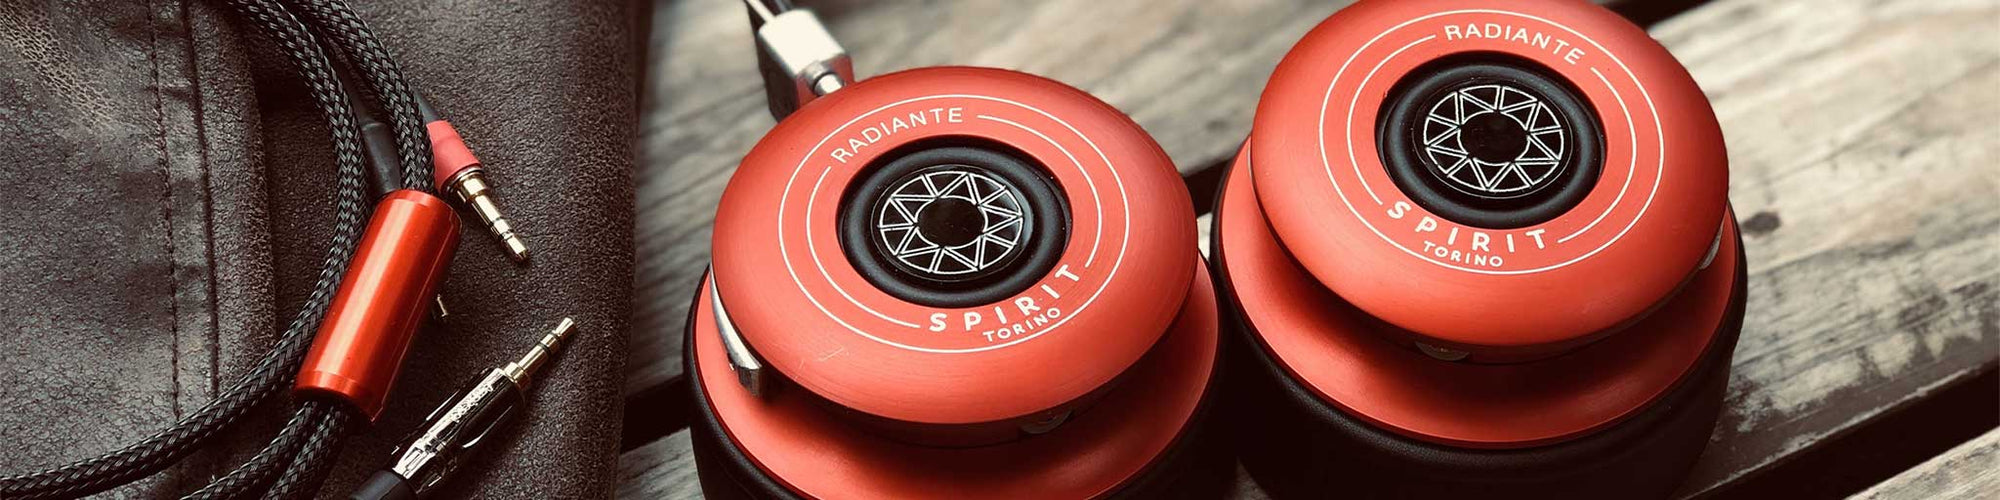 Spirit Torino Headphones